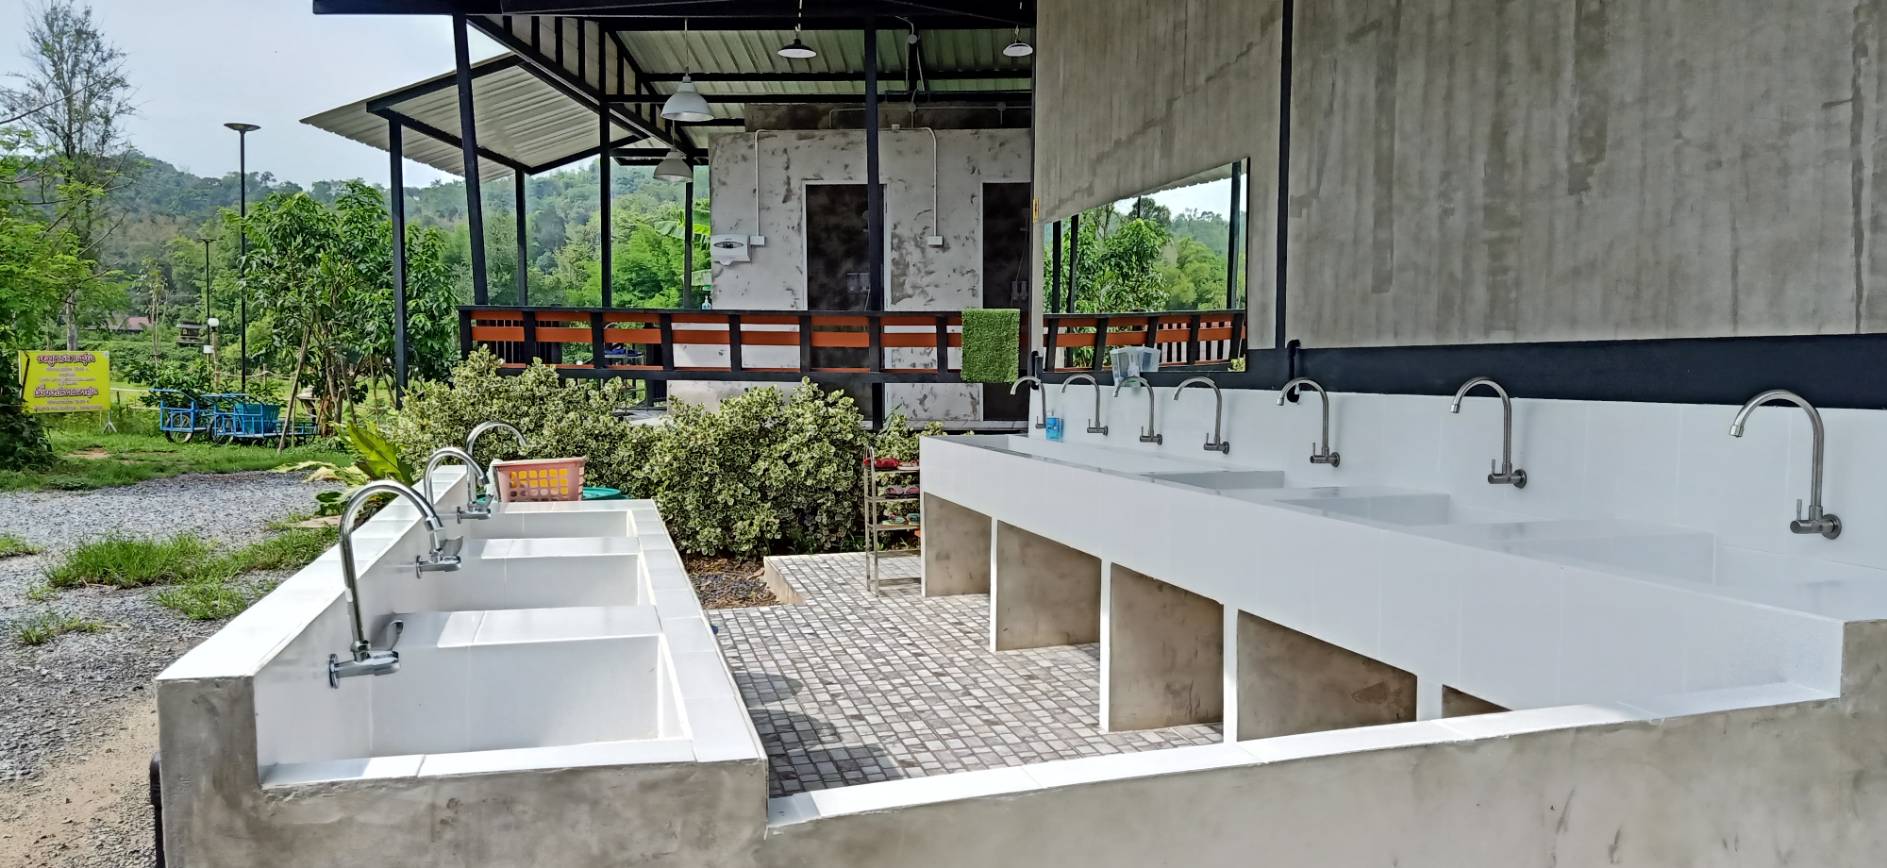 ห้องน้ำบ้านคุณยาย แค้มปิ้ง ที่กางเต็นท์ นครนายก Ban Kun Yay Camping Nakornnayok